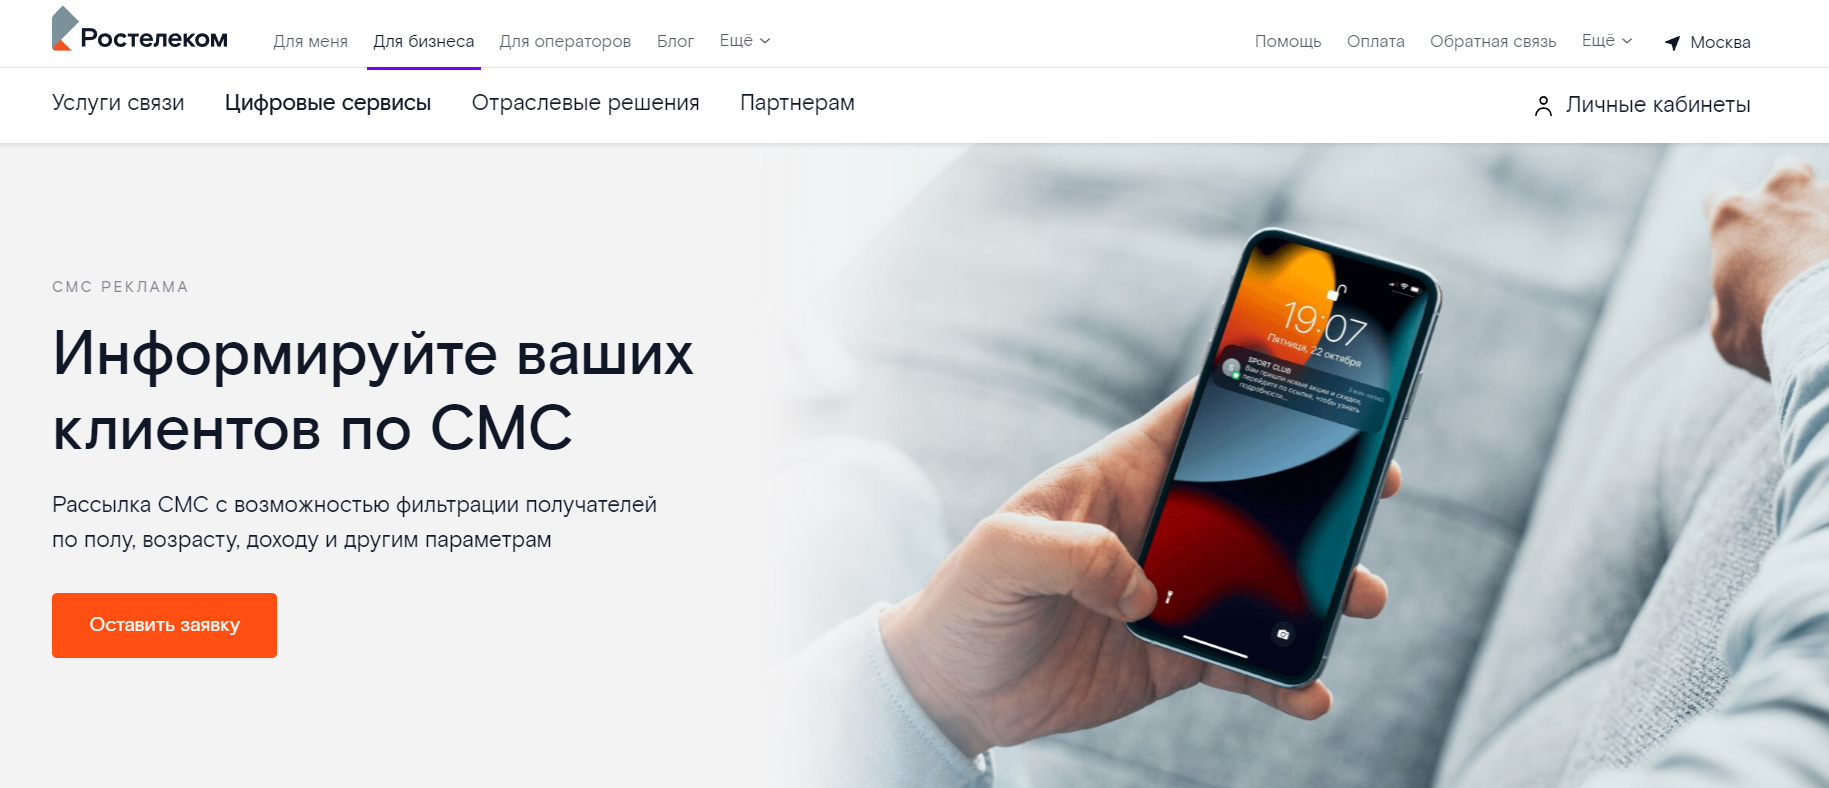 Сайт платформы для SMS рассылки Ростелеком.